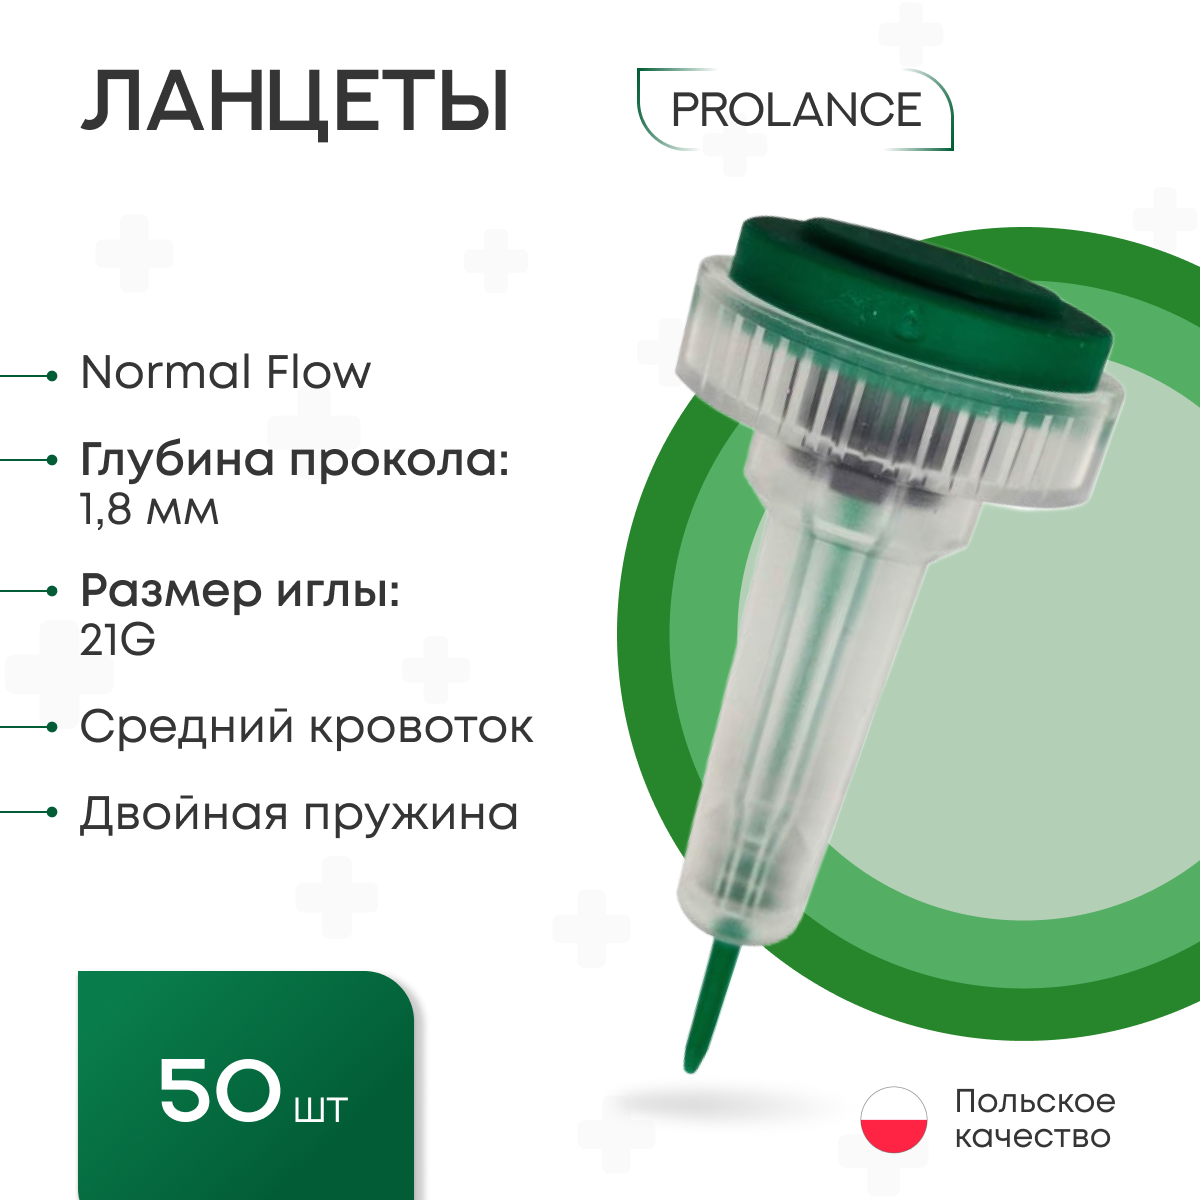 Ланцеты Prolance Normal Flow для капиллярного забора крови 50 шт, глубина прокола 1,8 мм, зеленые